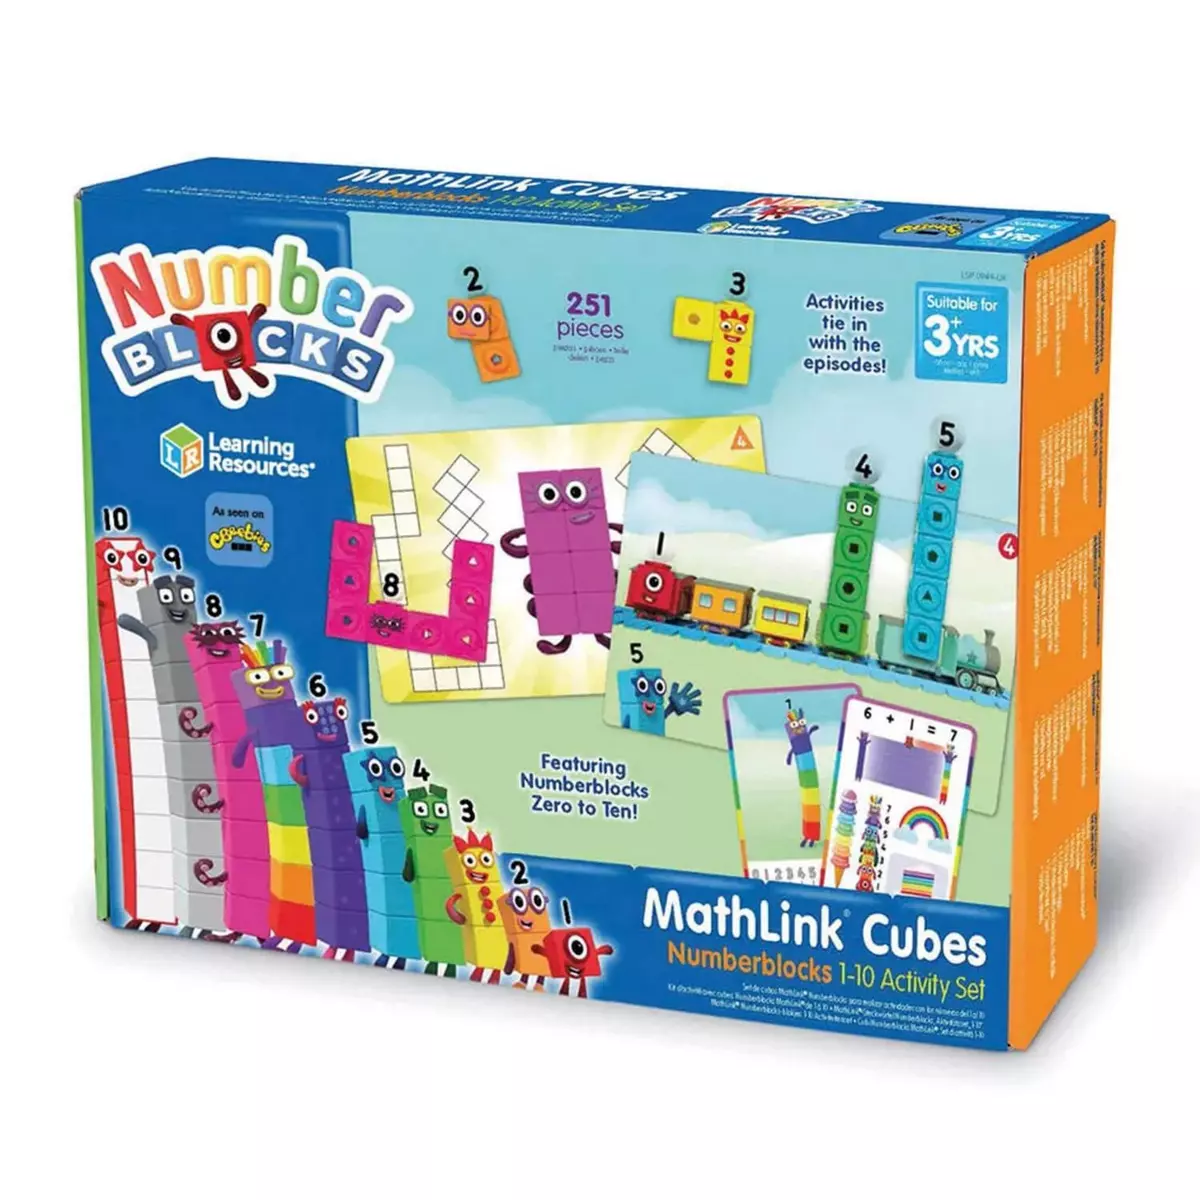  Kit d'activités avec cubes MathLink Numberblocks de 1 à 10